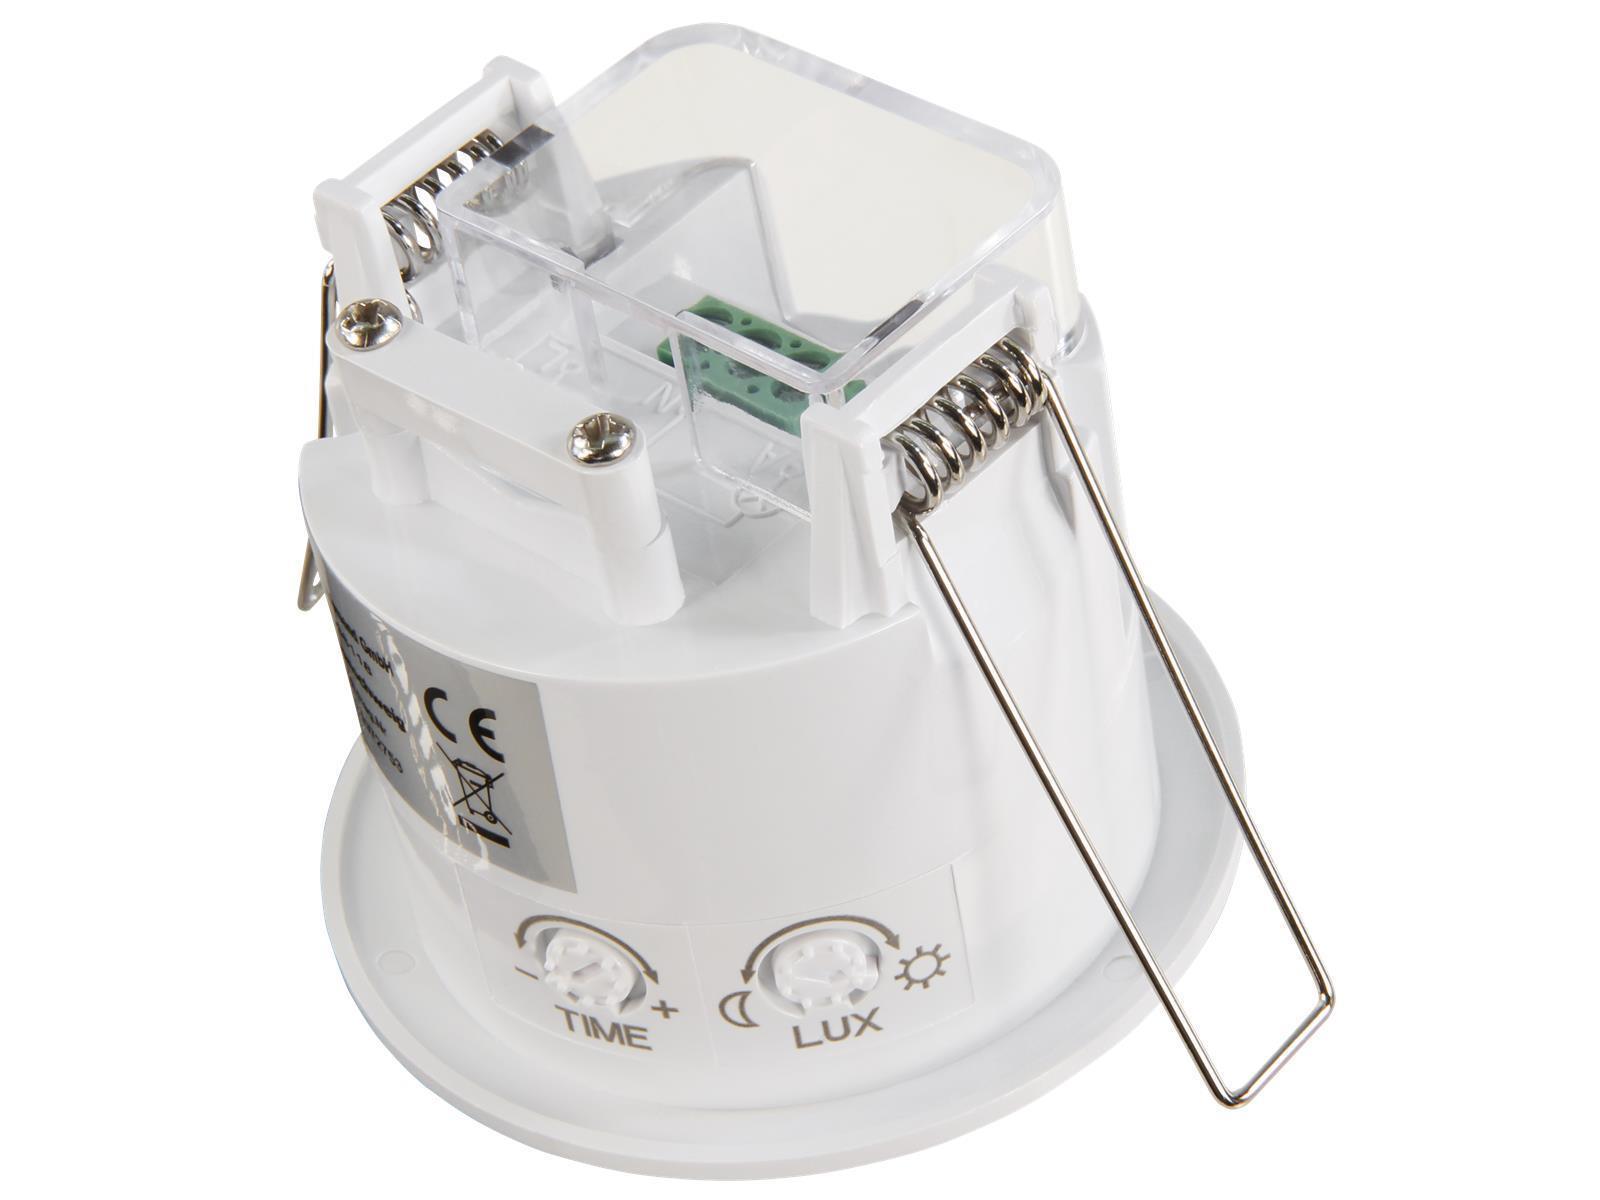 IR Bewegungsmelder McShine ''LX-630'', 360°, 230V / 1.200W, weiß, Unterputz, LED geeignet